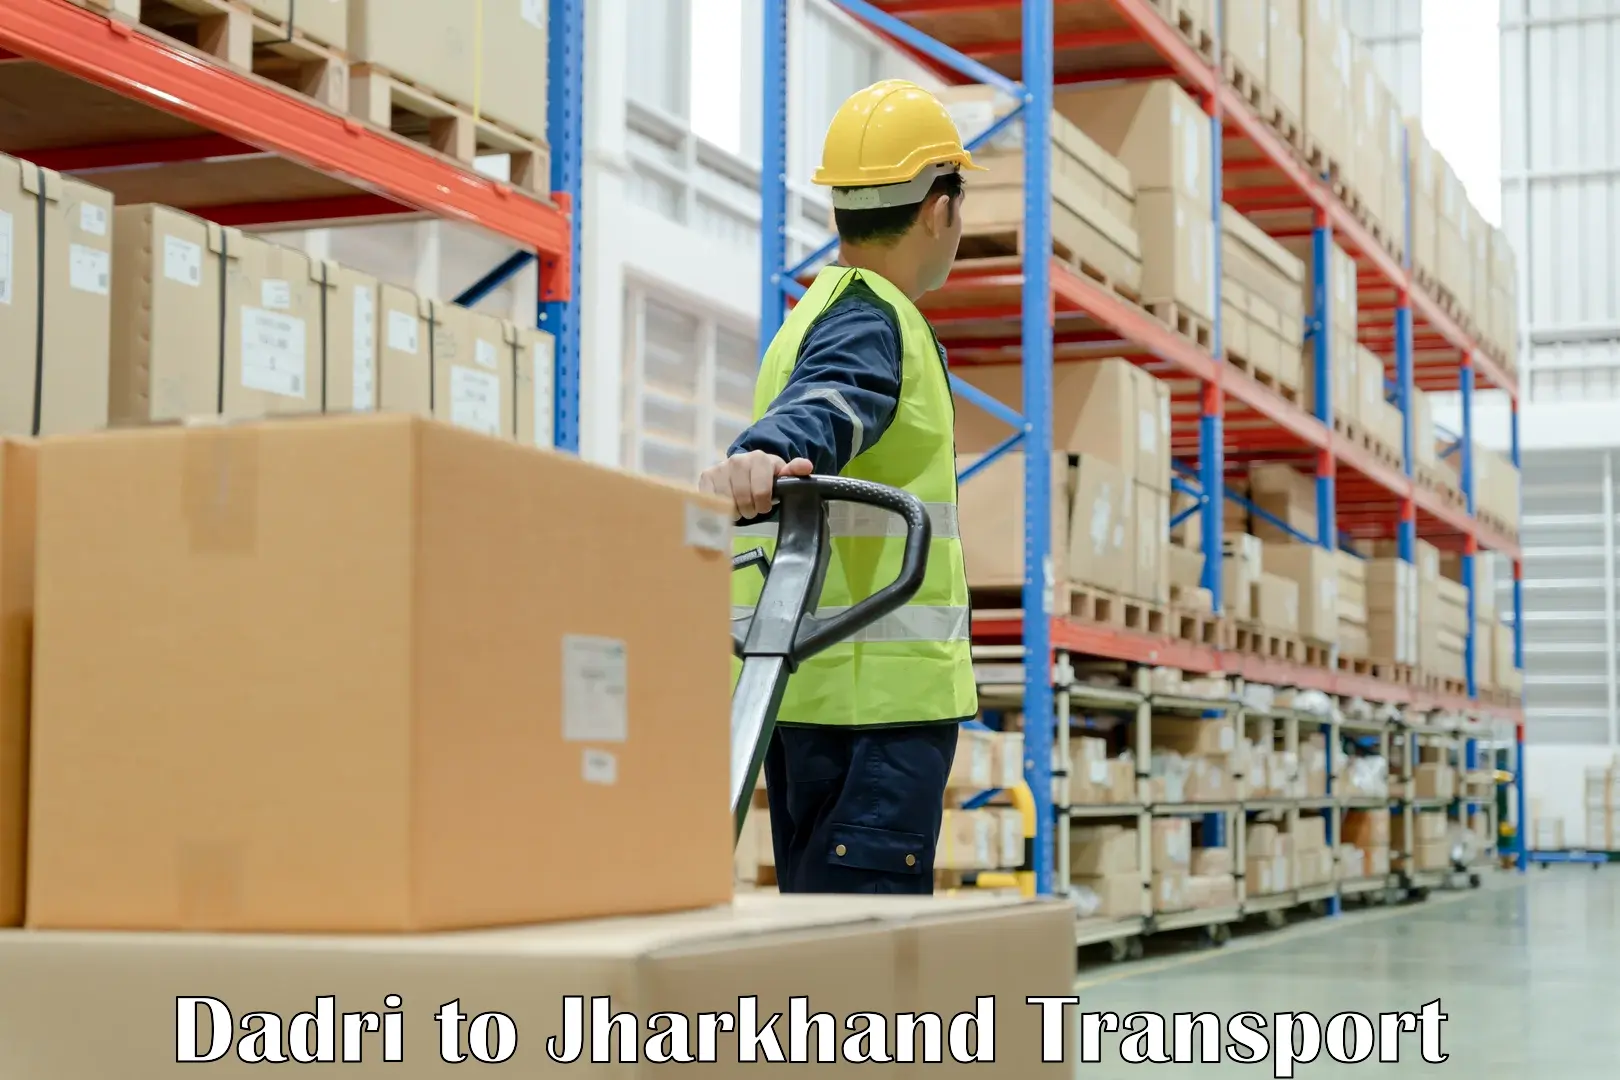 Furniture transport service Dadri to IIT Dhanbad